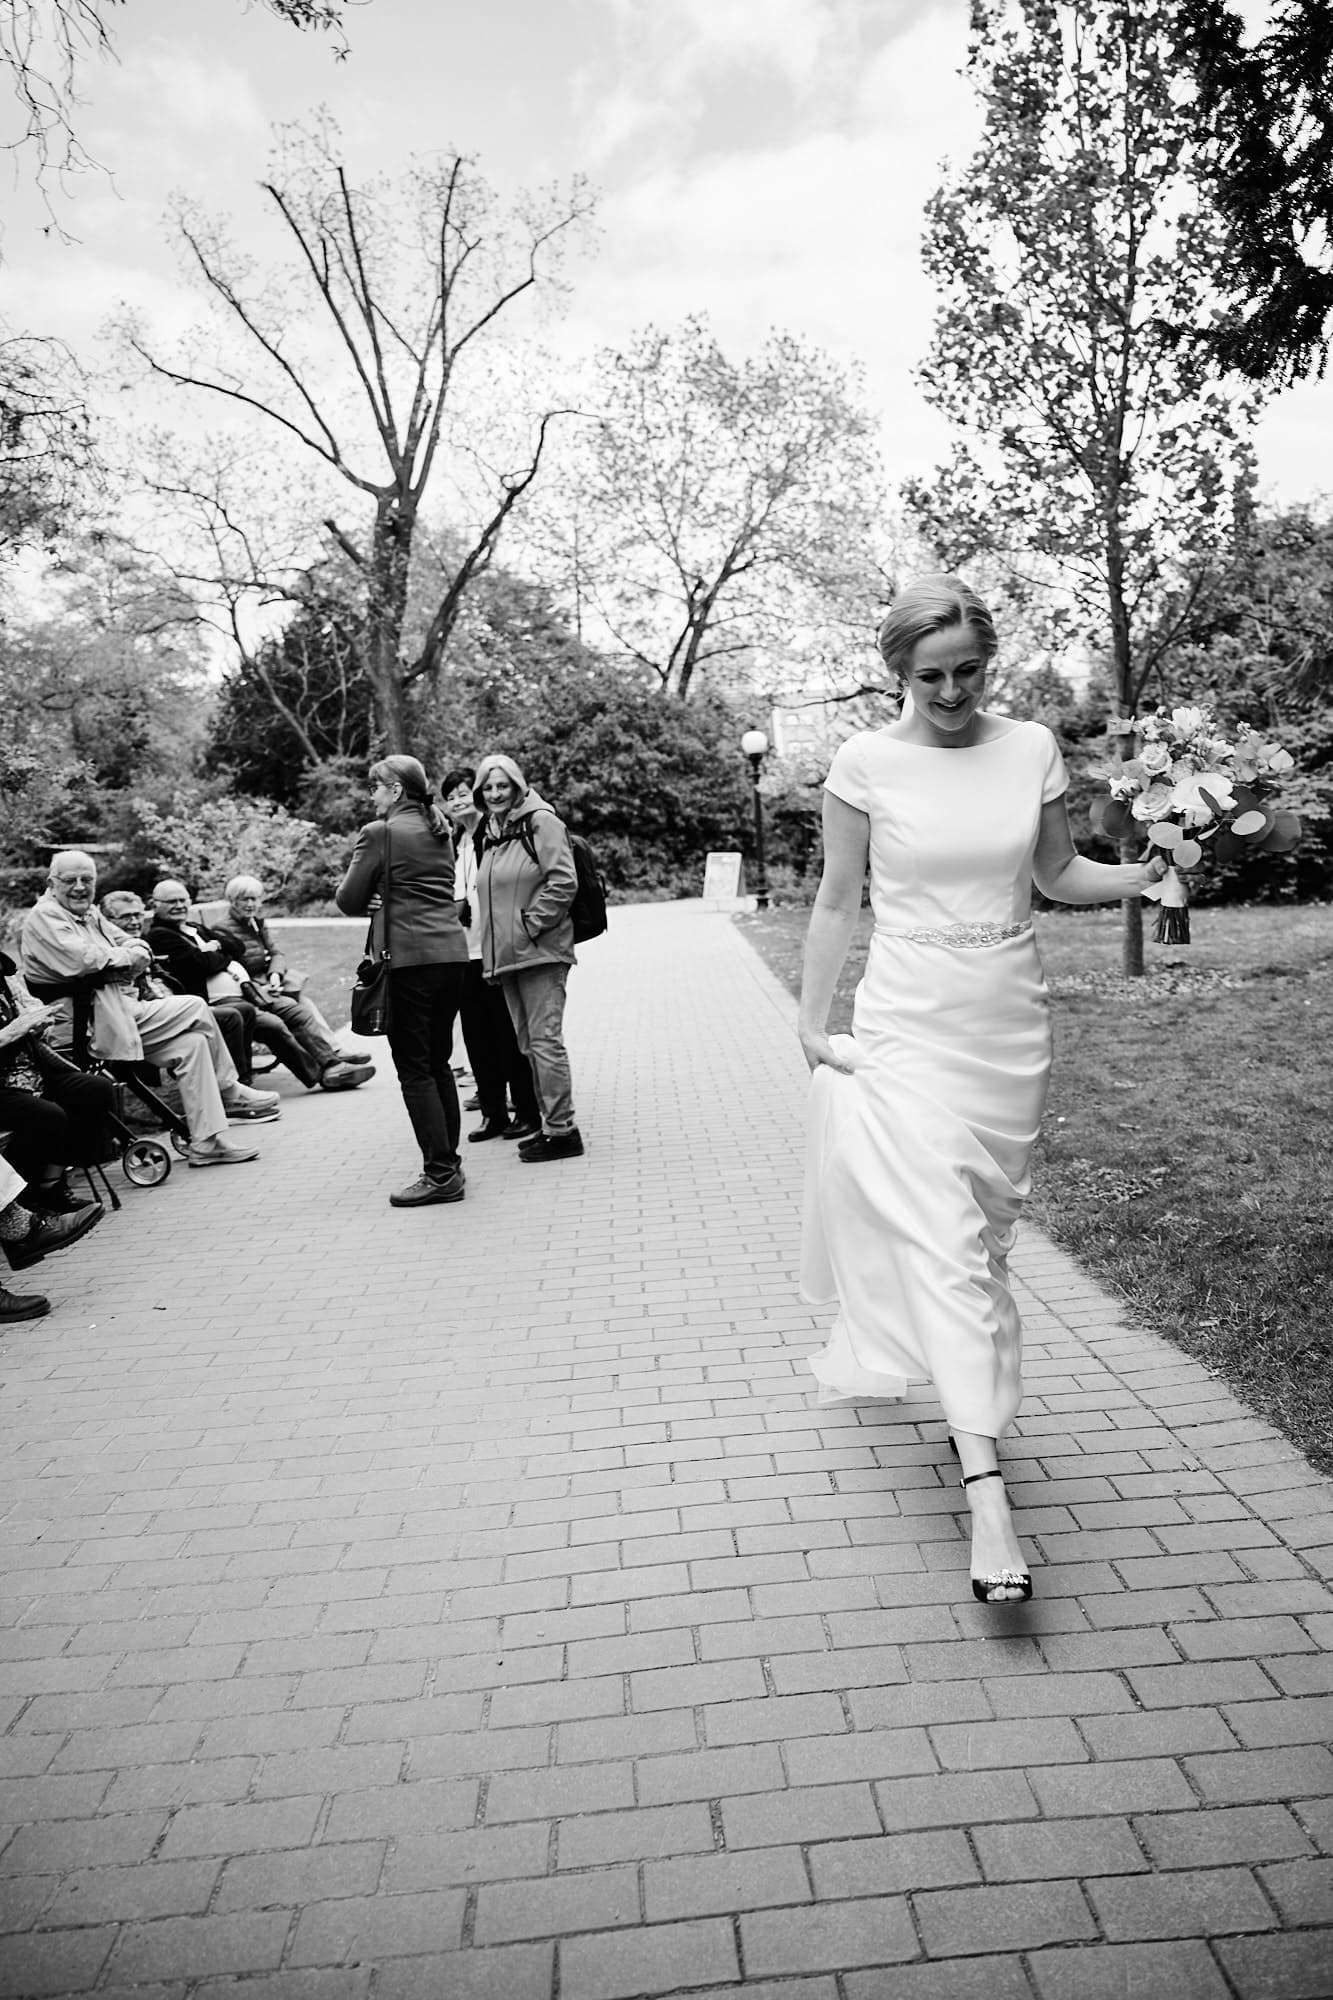 Eine Braut geht mit Schaulustigen im Hintergrund einen Parkweg entlang und schafft wunderschöne Hochzeitsbilder.